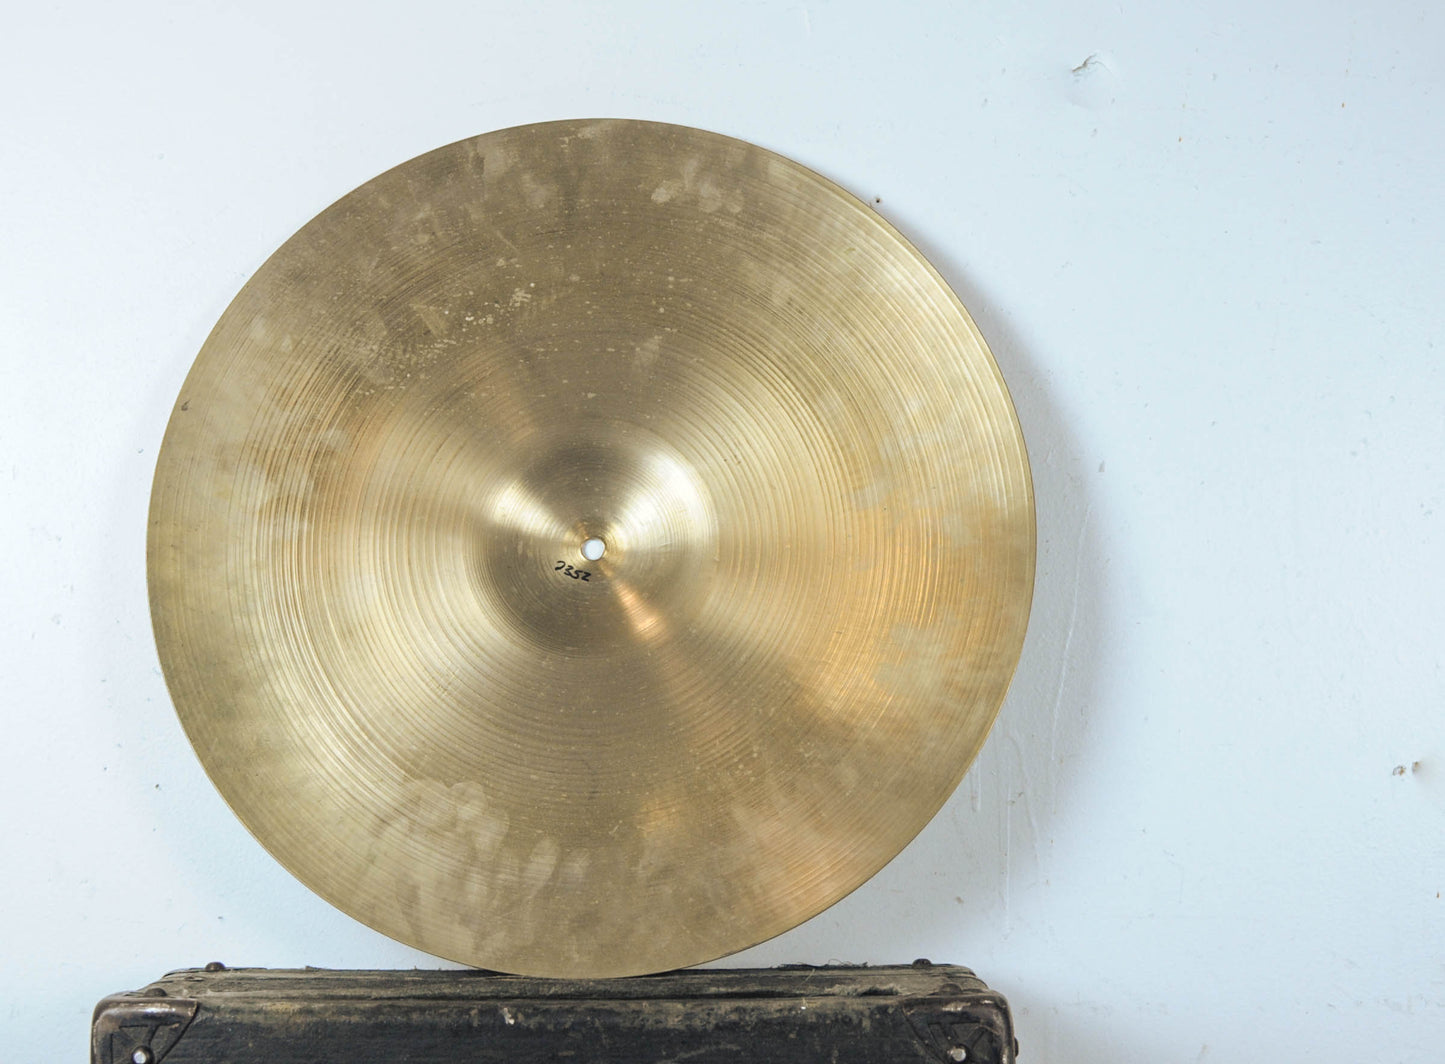 1960s Zildjian A 20" Ride Cymbal 2352g